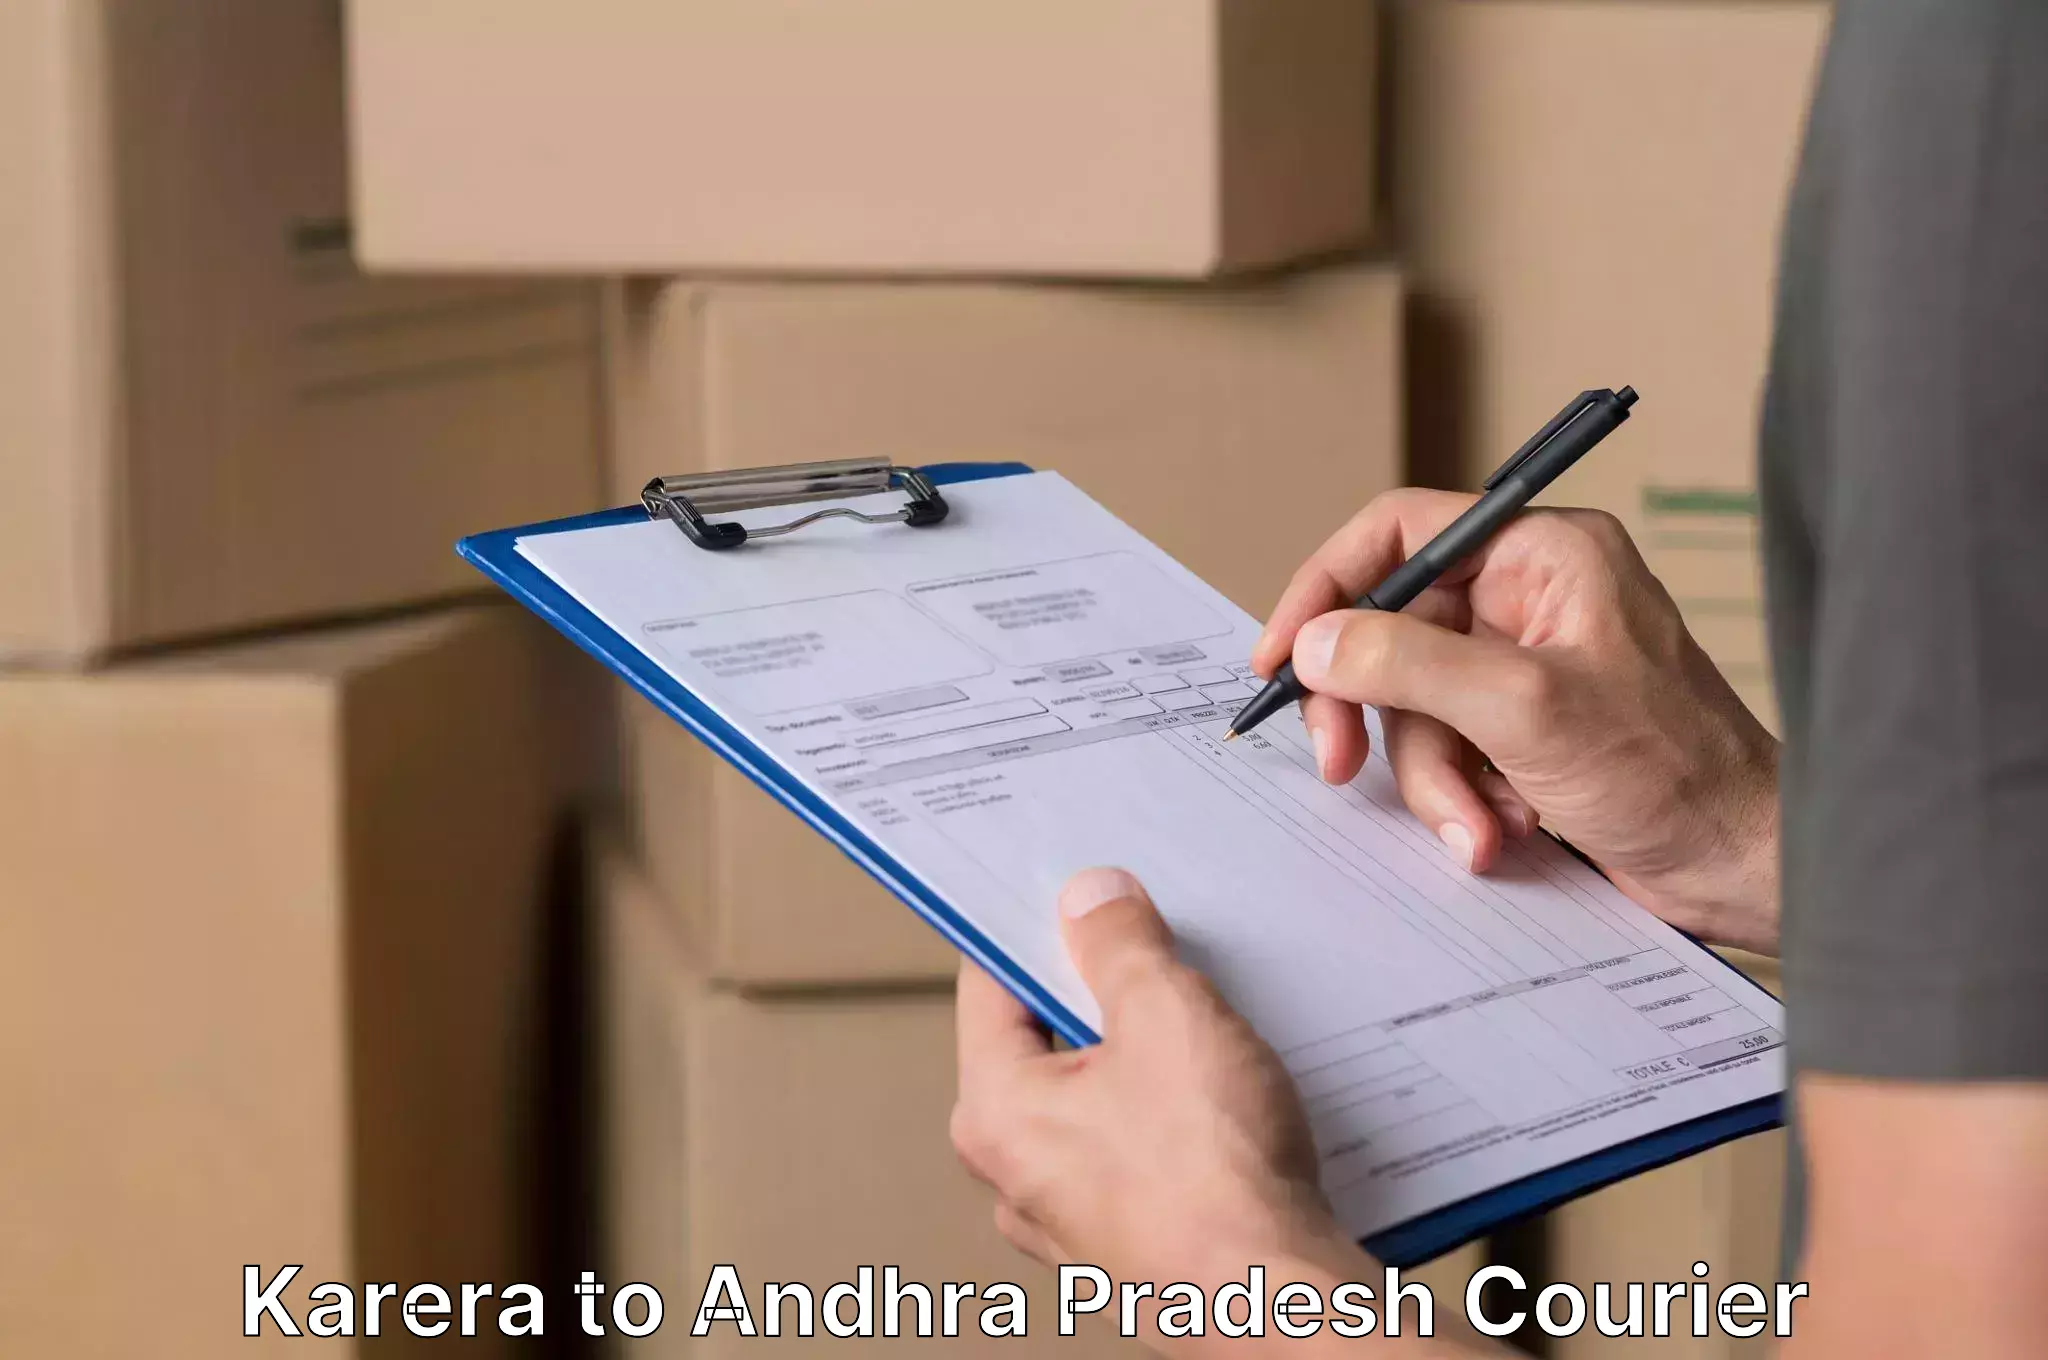 Professional packing services Karera to Andhra Pradesh